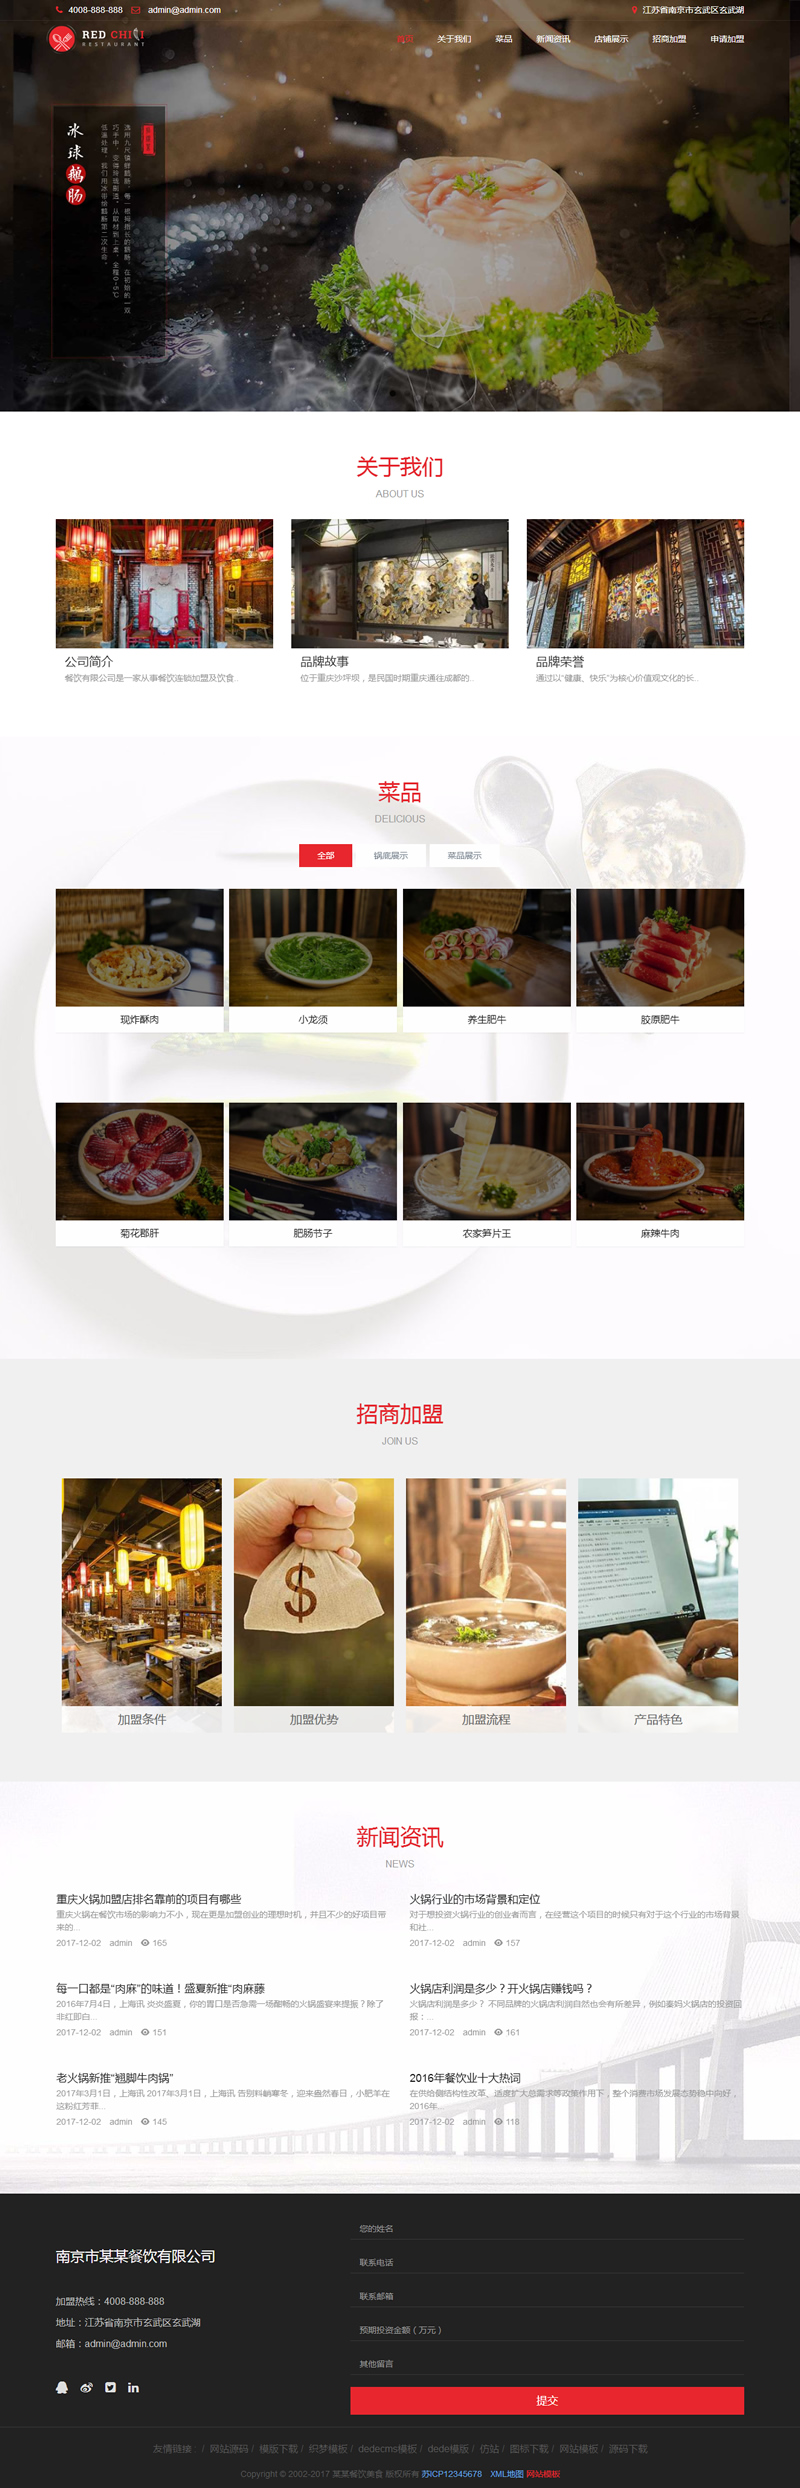 织梦模板HTML5响应式餐饮美食加盟类网站源码